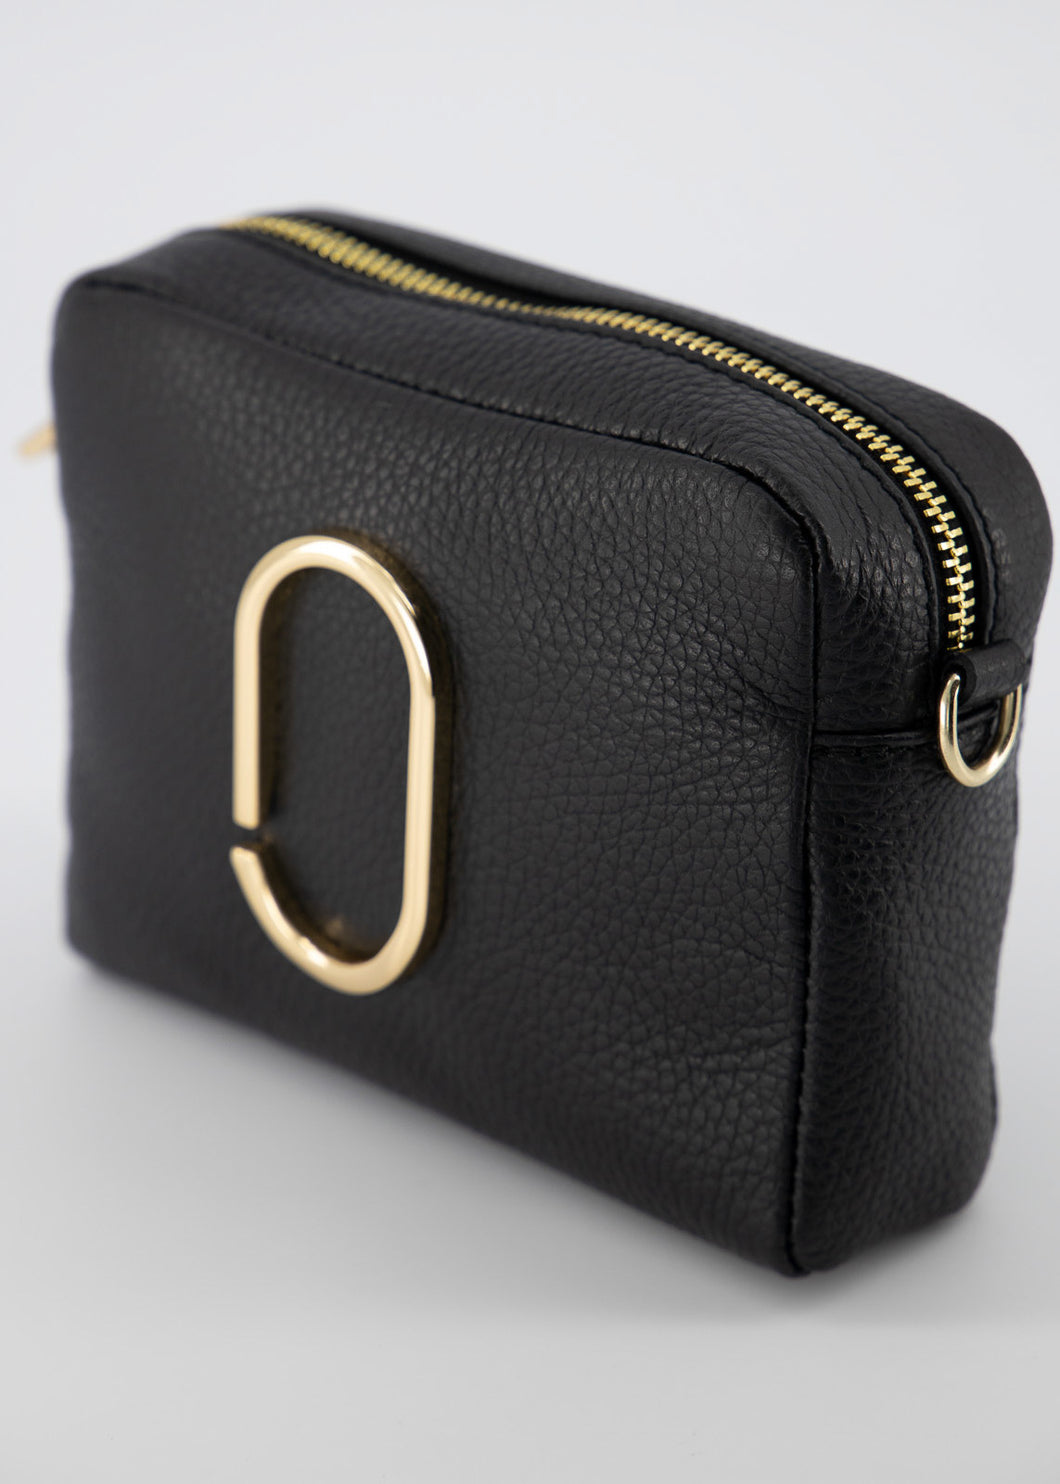 Zwarte Lederen Tas Classic Grain Zwart, model 'crossbody bag', heeft een goudkleurige applicatie op de voorkant en heeft een verstelbare en afneembare schouderband. Deze damestas is verkrijgbaar in verschillende kleuren: Zwart, Lichtblauw, Magenta, Groen. De schouderband is te vervangen door een bagstrap met leuk motief.